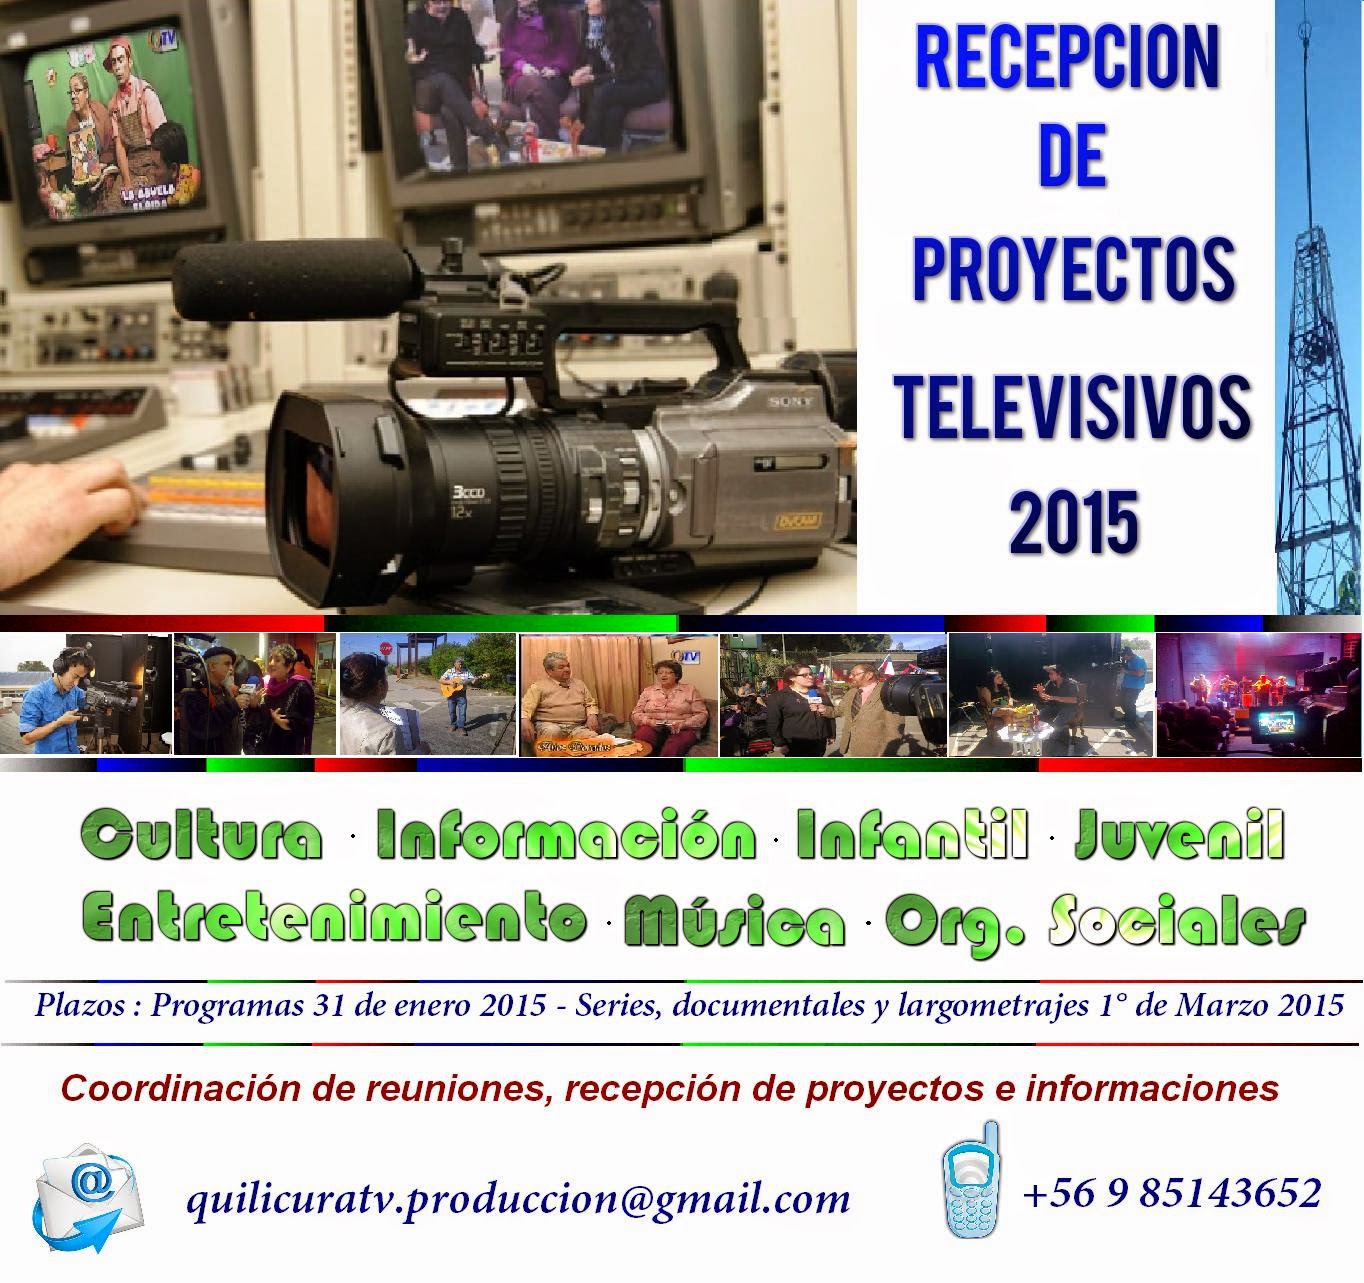 RECEPCION DE PROYECTOS TELEVISIVOS 2015